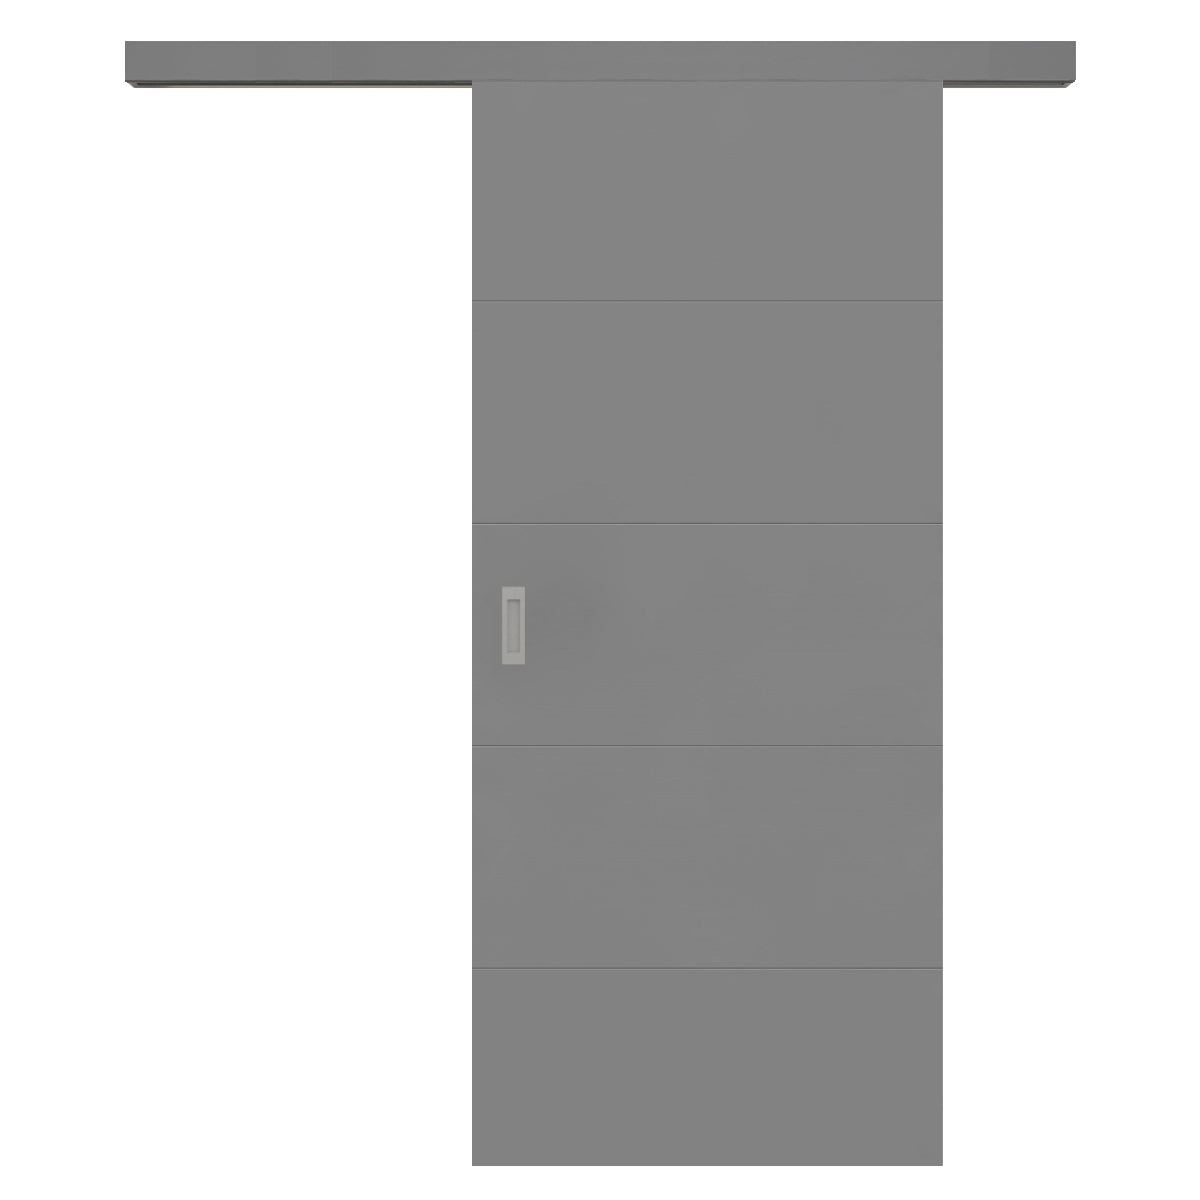 Schiebetür für Set mit grauem Laufkasten grau 4 Rillen quer - Modell Designtür Q47